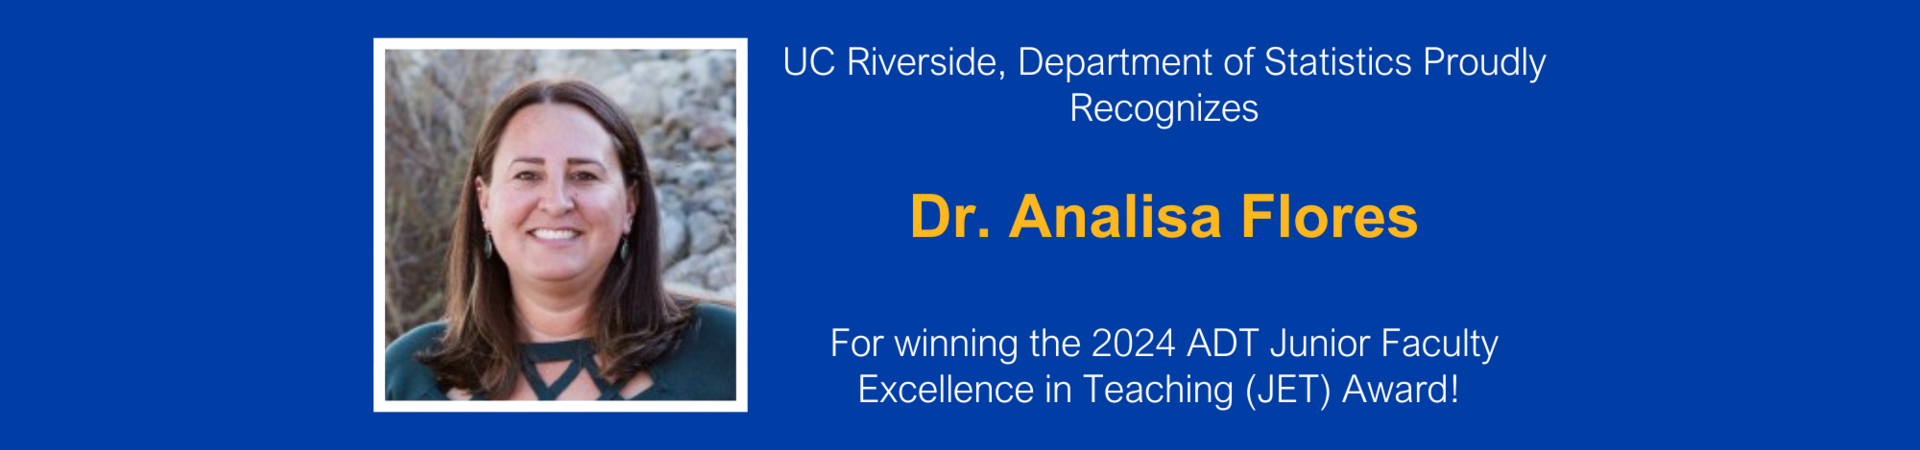 Dr. Analisa Flores winning 2024 ADT JET Award